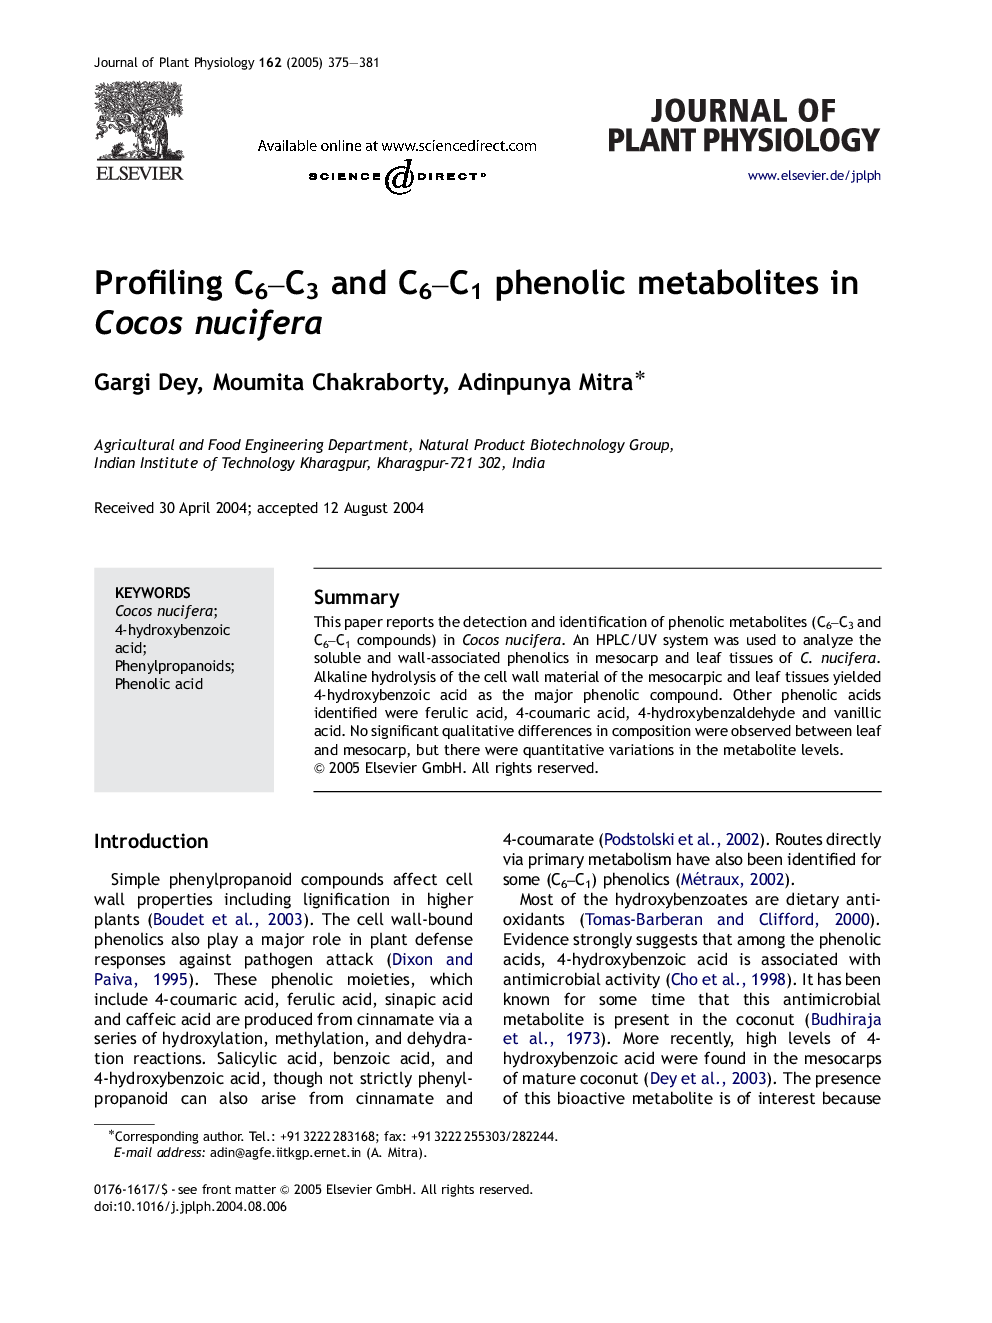 Profiling C6-C3 and C6-C1 phenolic metabolites in Cocos nucifera